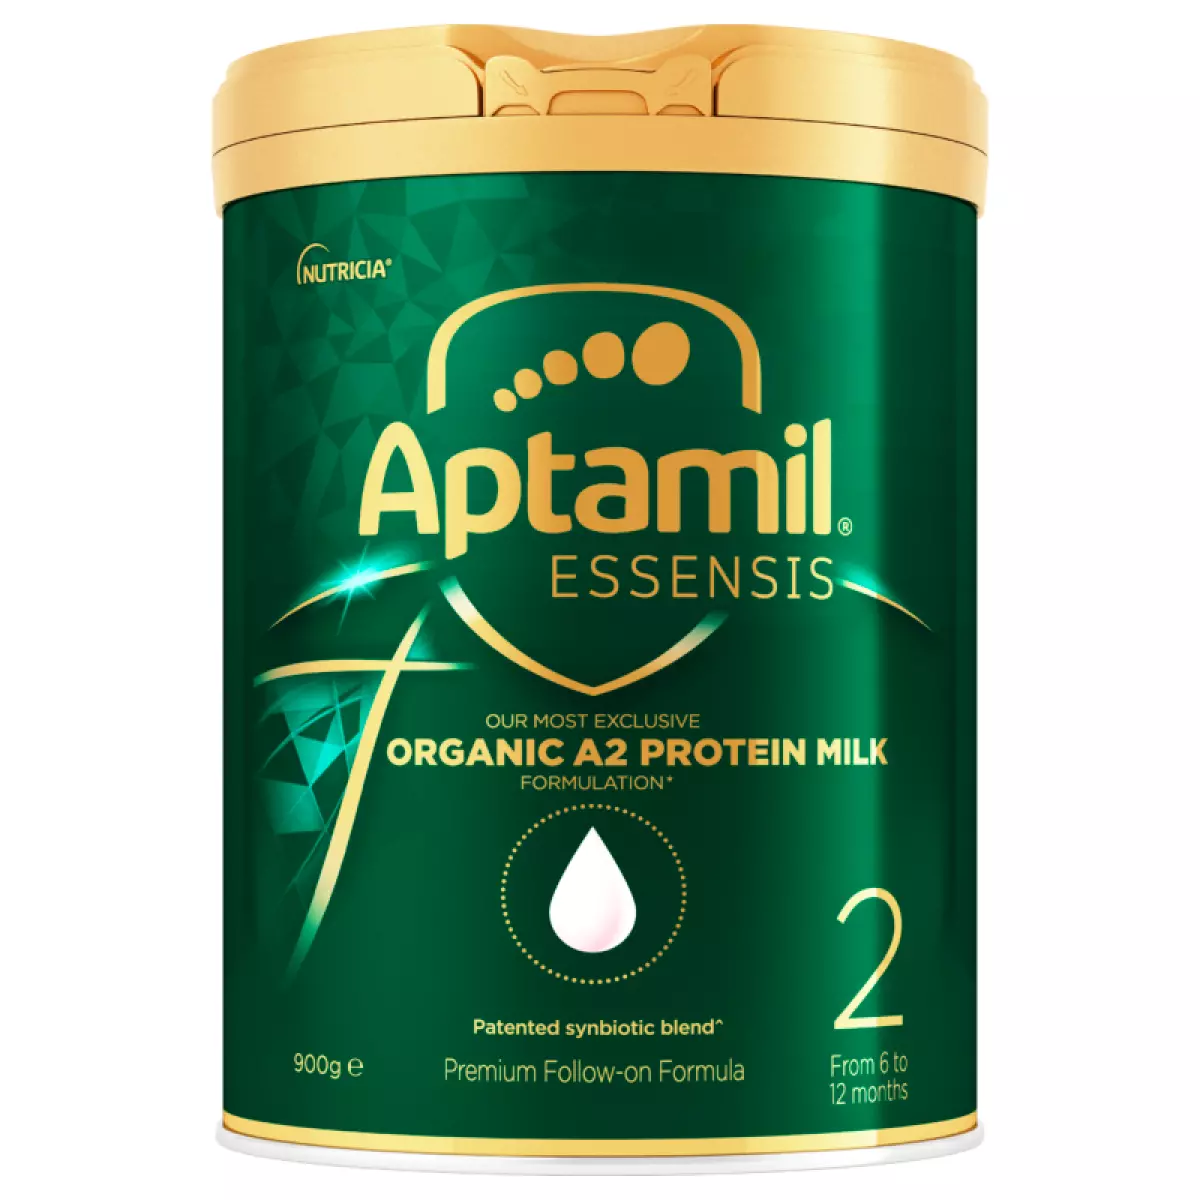 Sữa Aptamil Essensis số 2 dành cho bé từ 6-12 tháng tuổi.